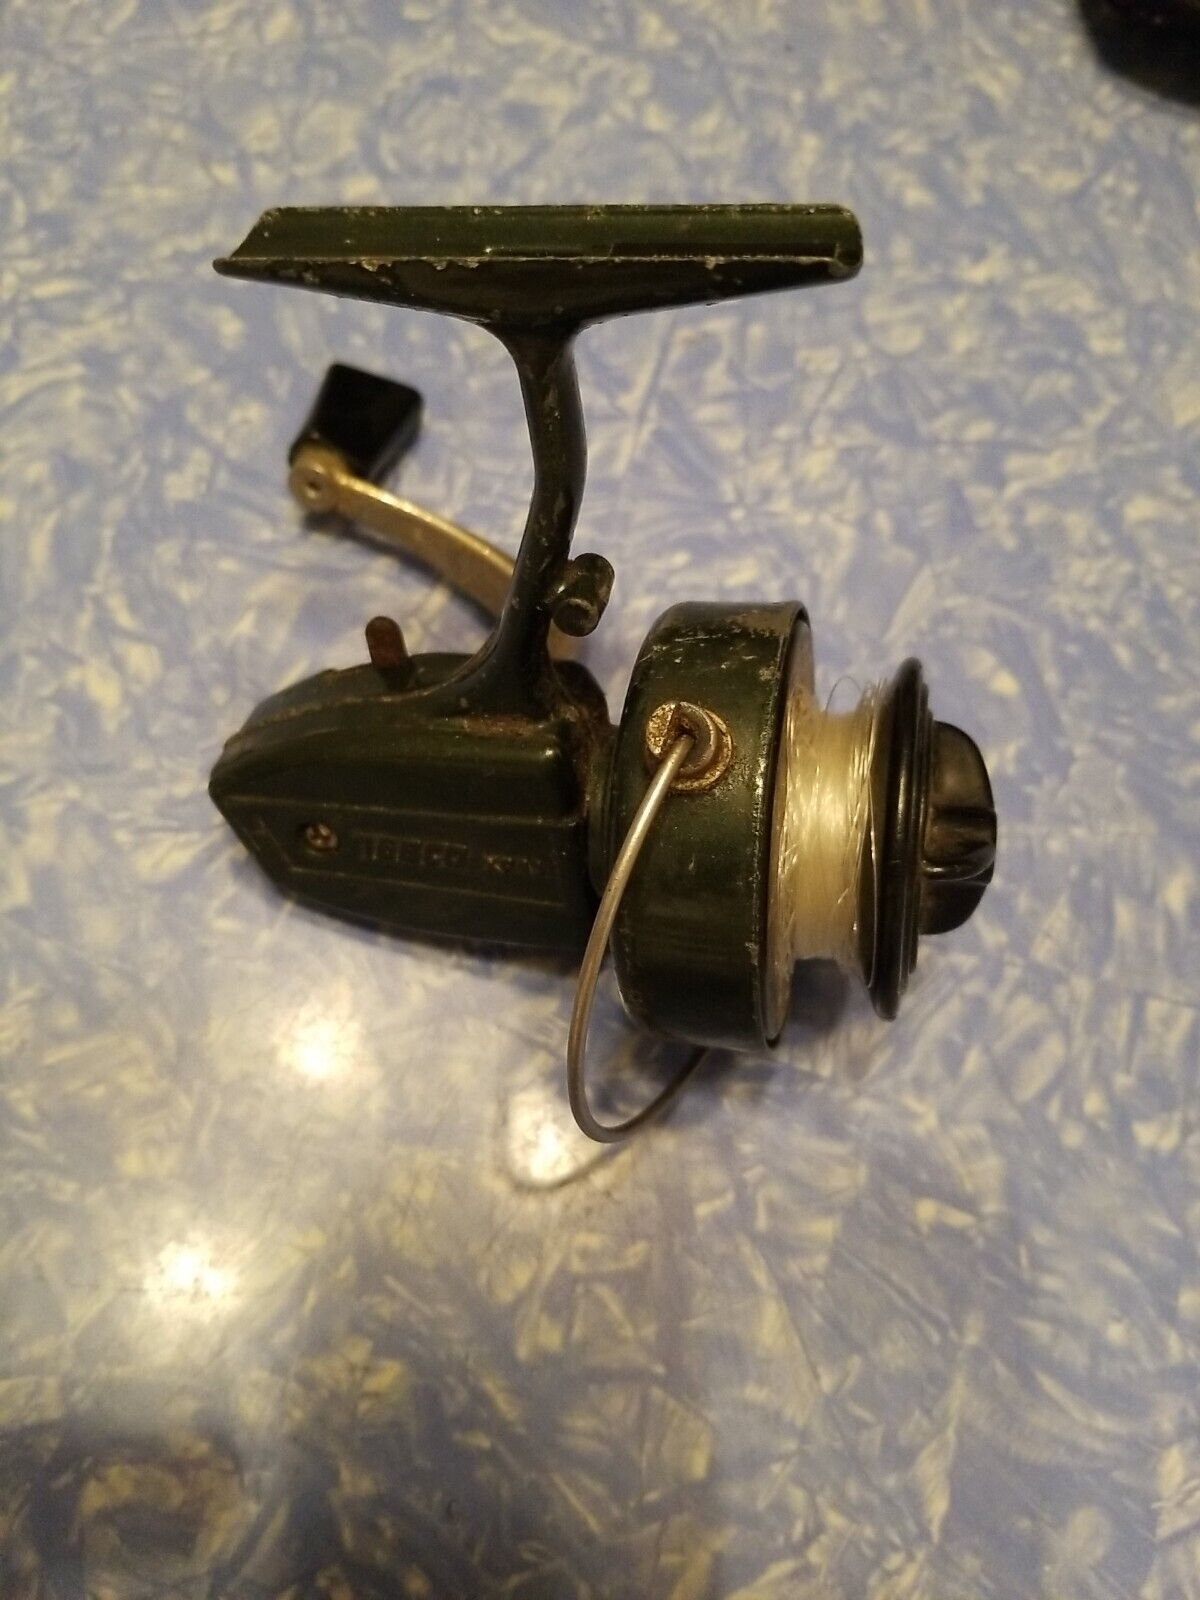 Vintage Zebco Xr11 Spinning Fishing Reel. Tested/ Works